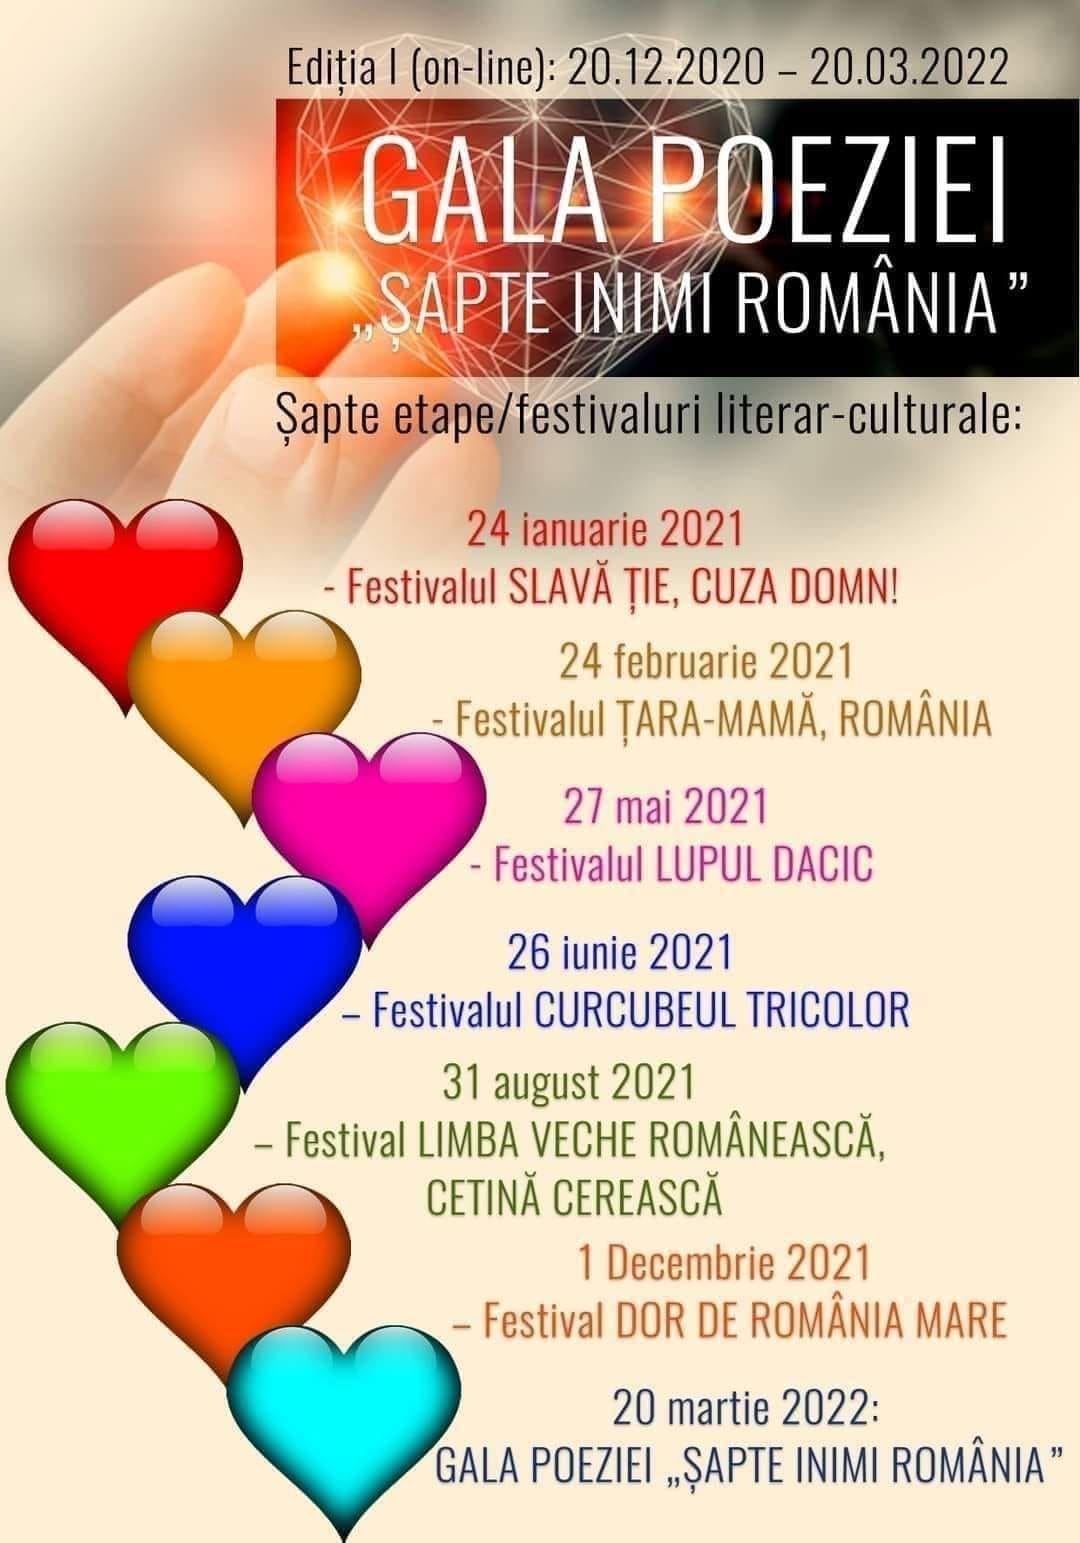 Gala Poeziei "ȘAPTE INIMI ROMÂNIA"